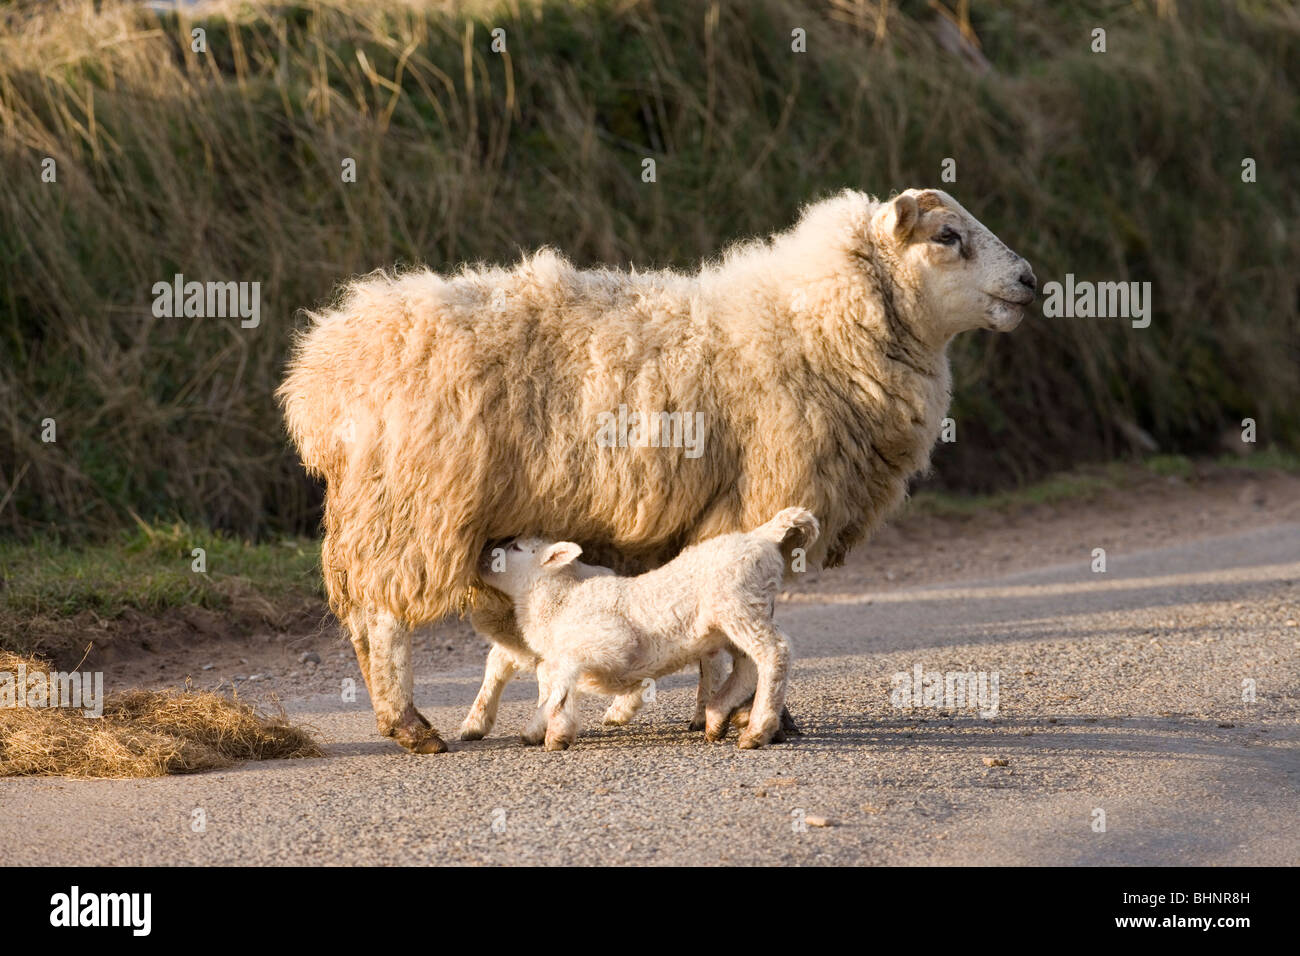 La oveja y el amamantamiento de los corderos. Ovejas. Ovis aries. Alcance libre. Carretera, Escocia. Foto de stock